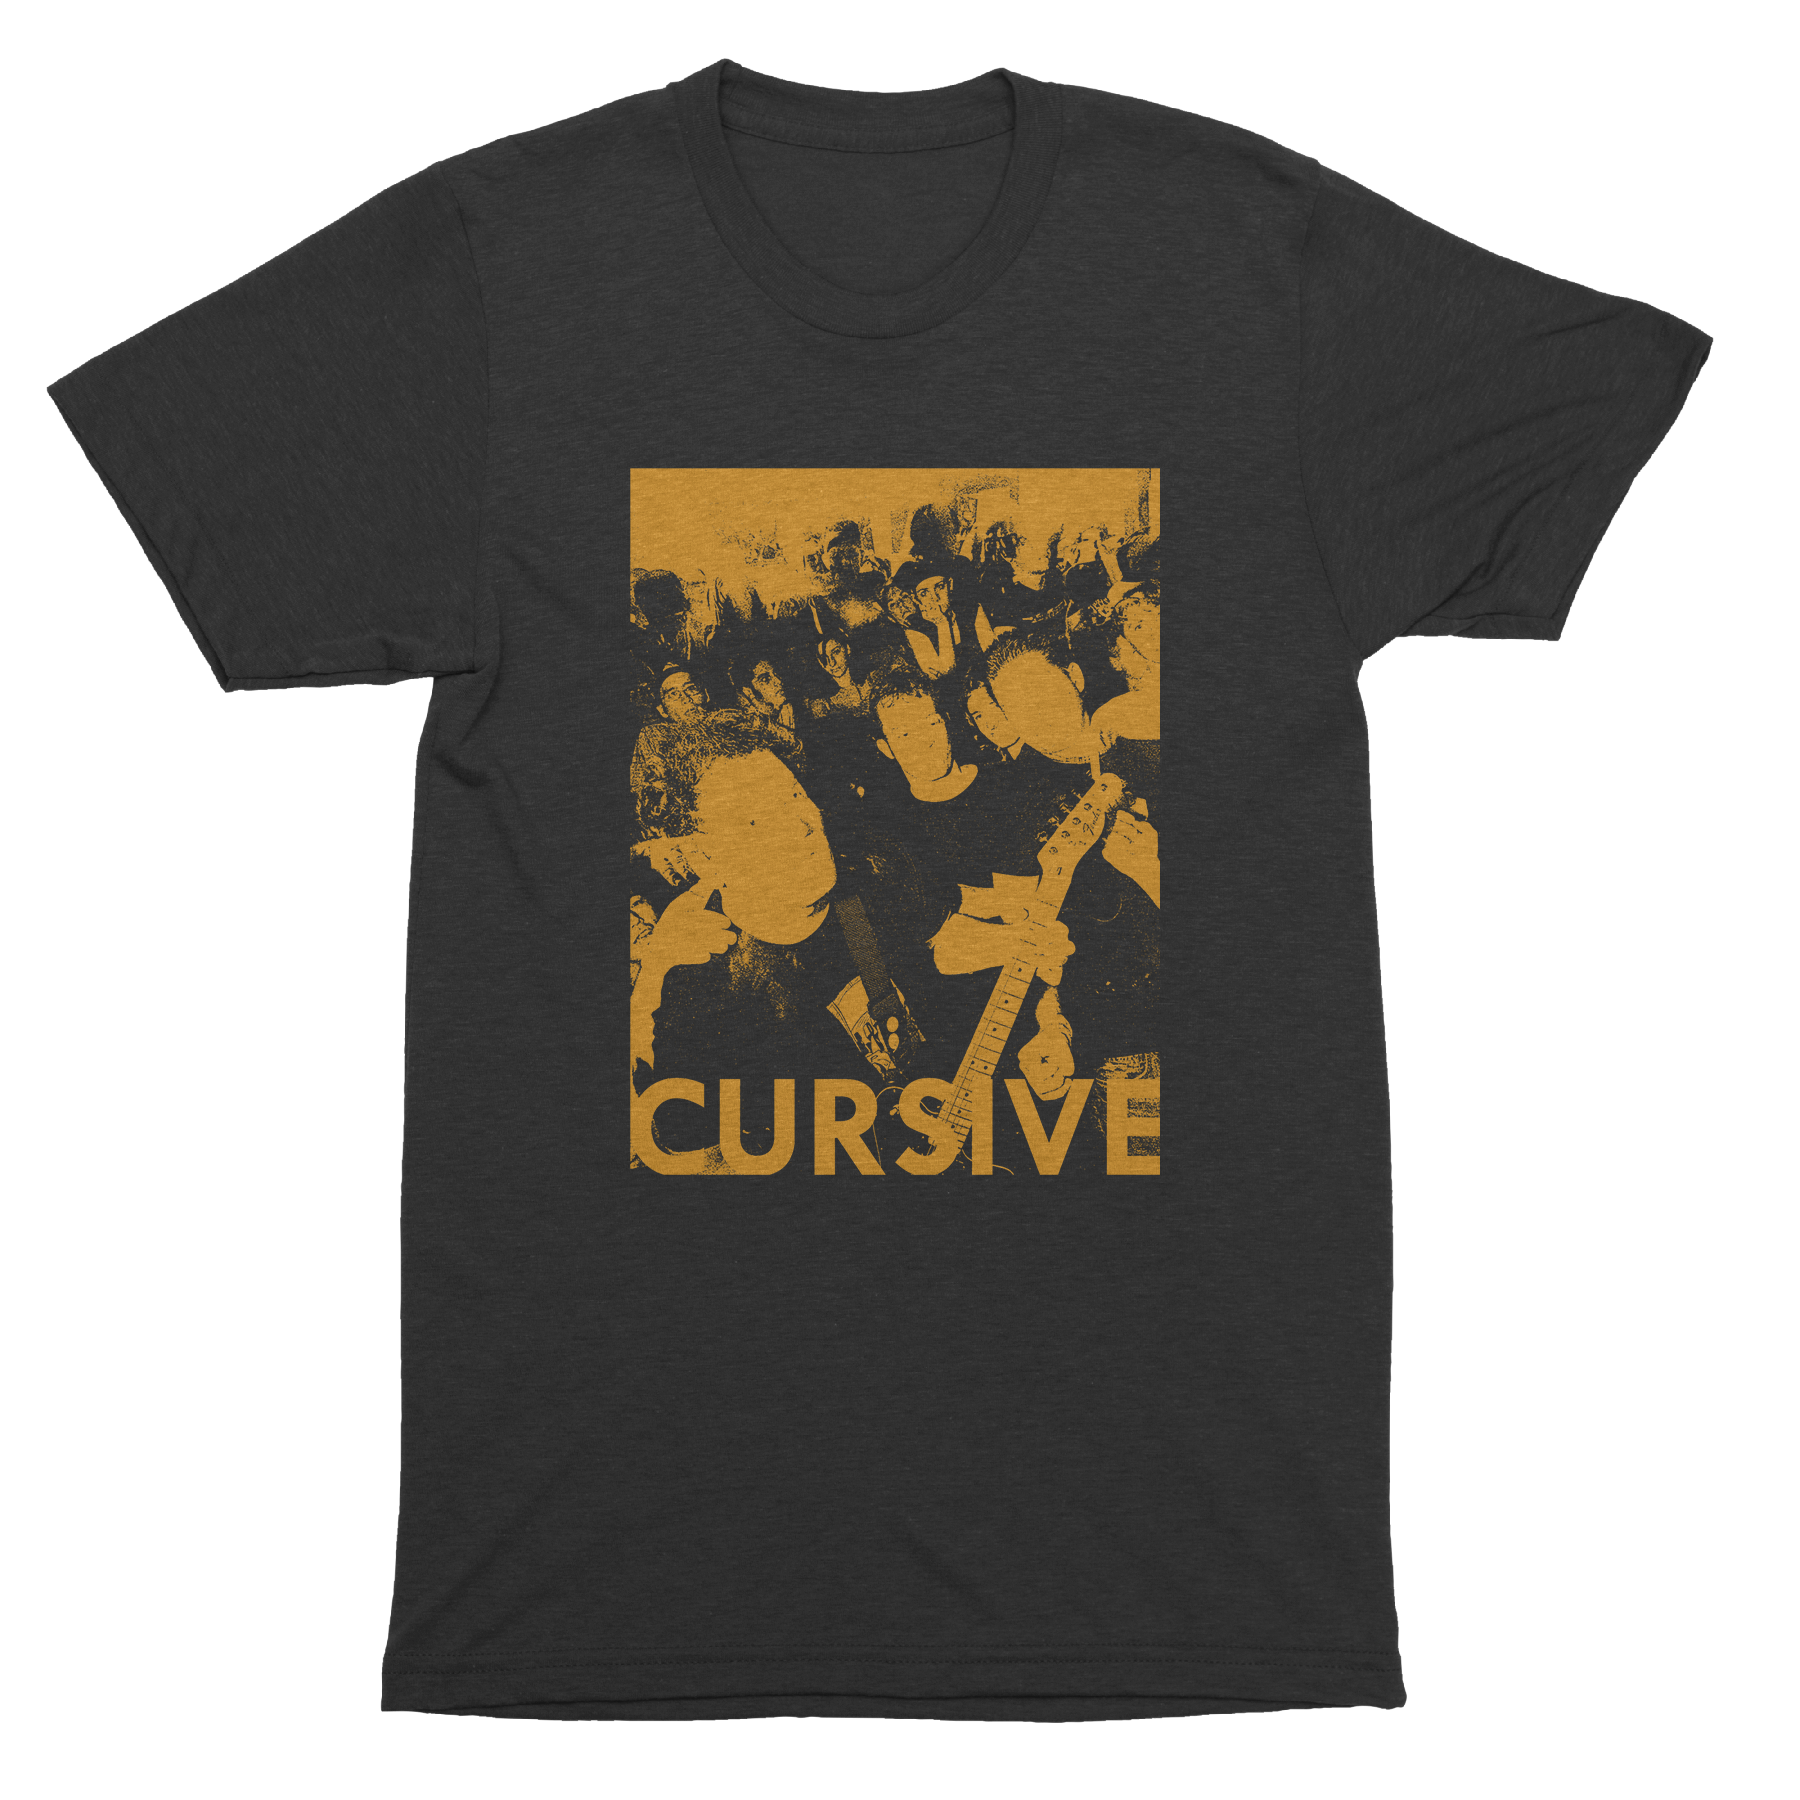 Cursive | Trent T-Shirt